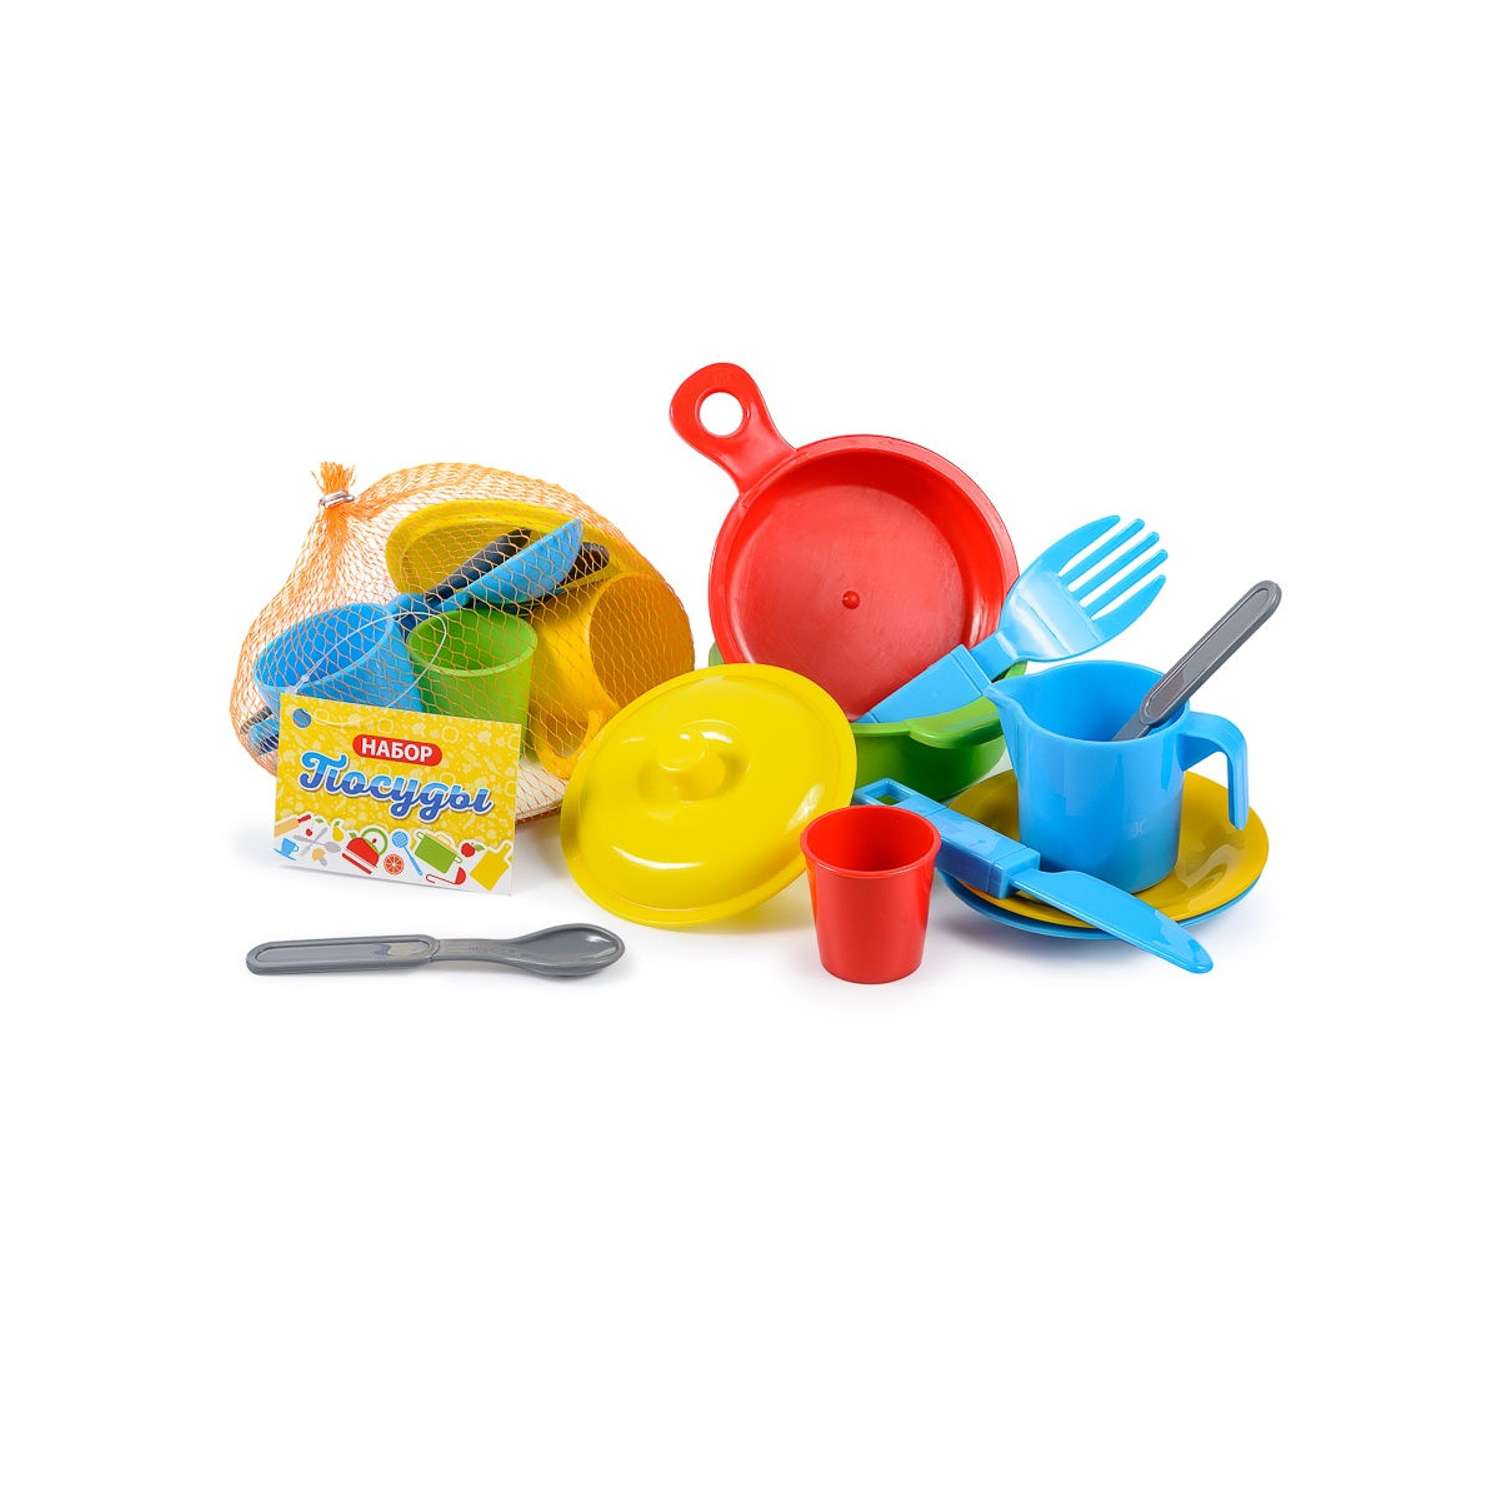 Игрушечная посуда детская Green Plast игровой набор для кухни 23 шт - фото 2